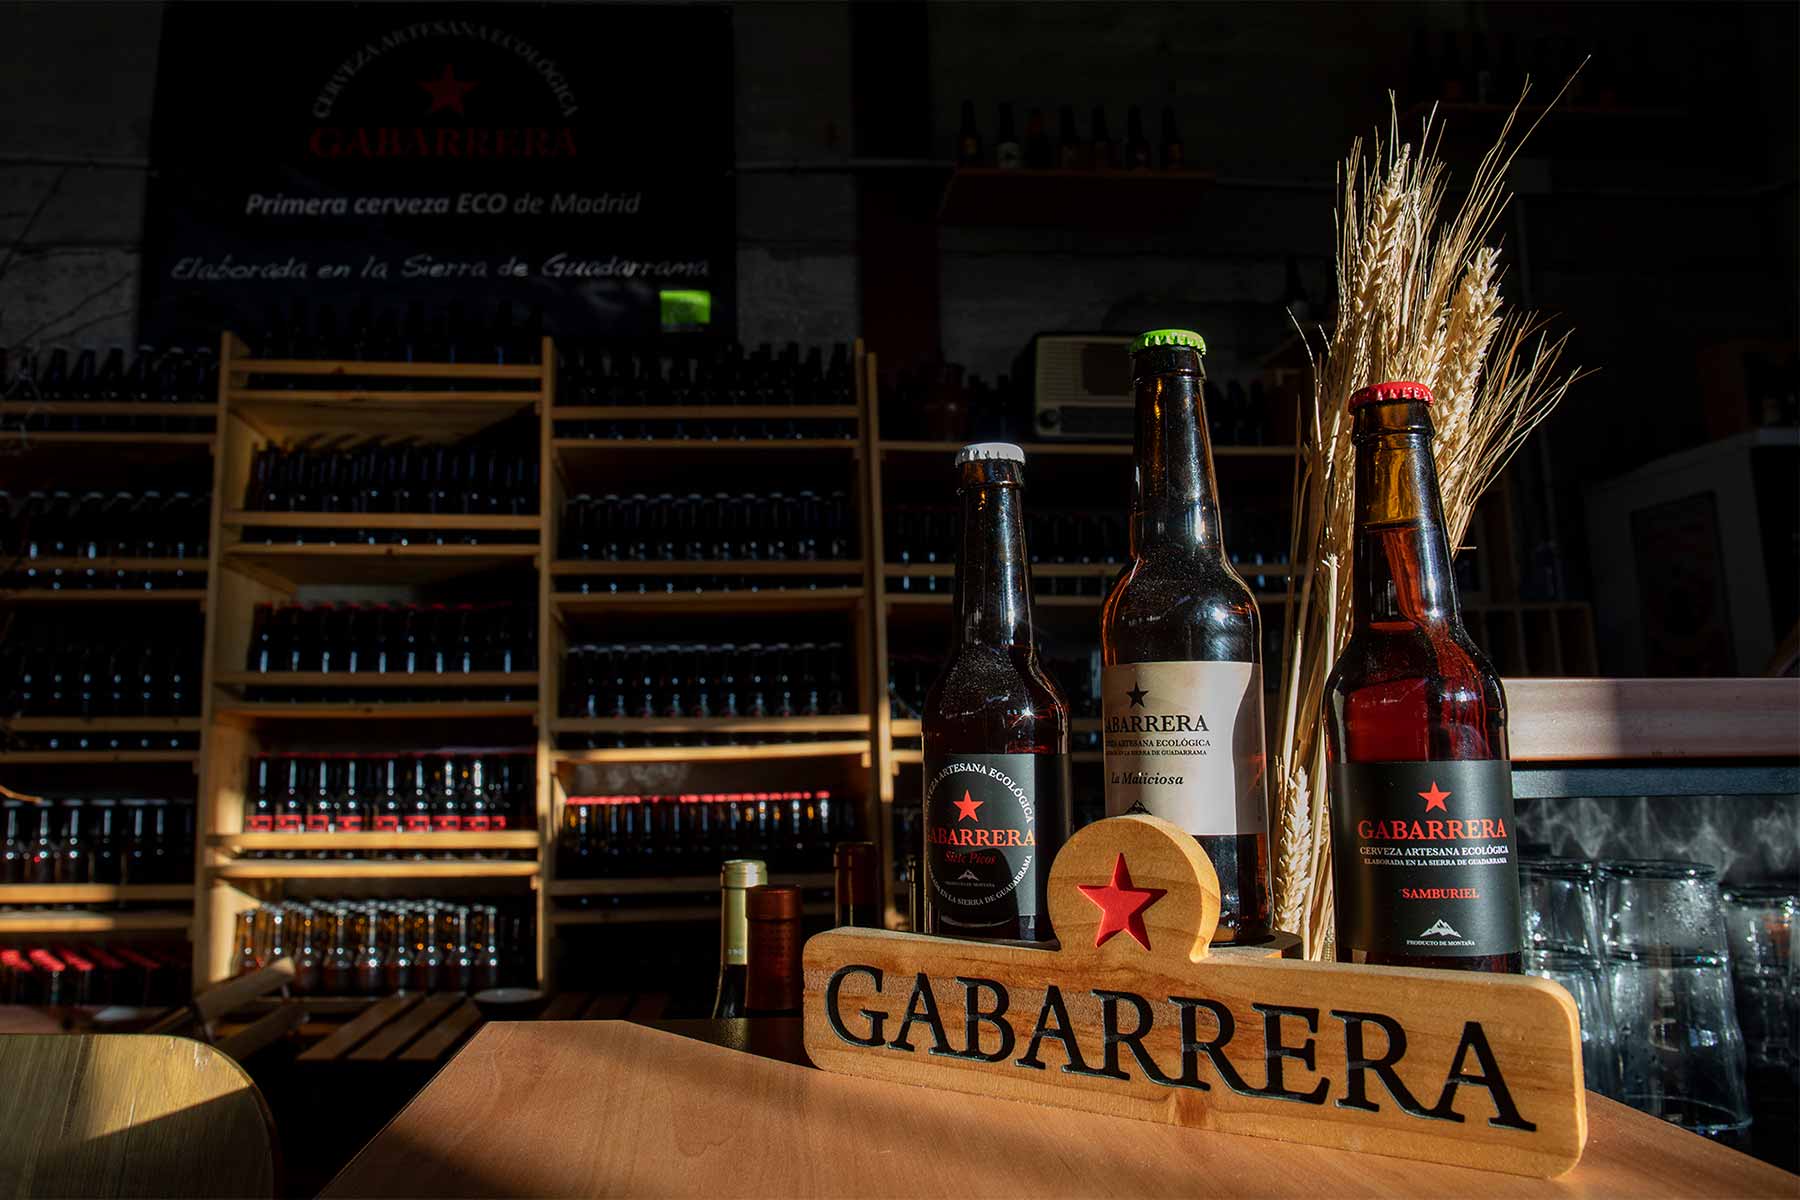 Cooperativa de cervezas Gabarrera, economía ética en la Sierra de Guadarrama 10